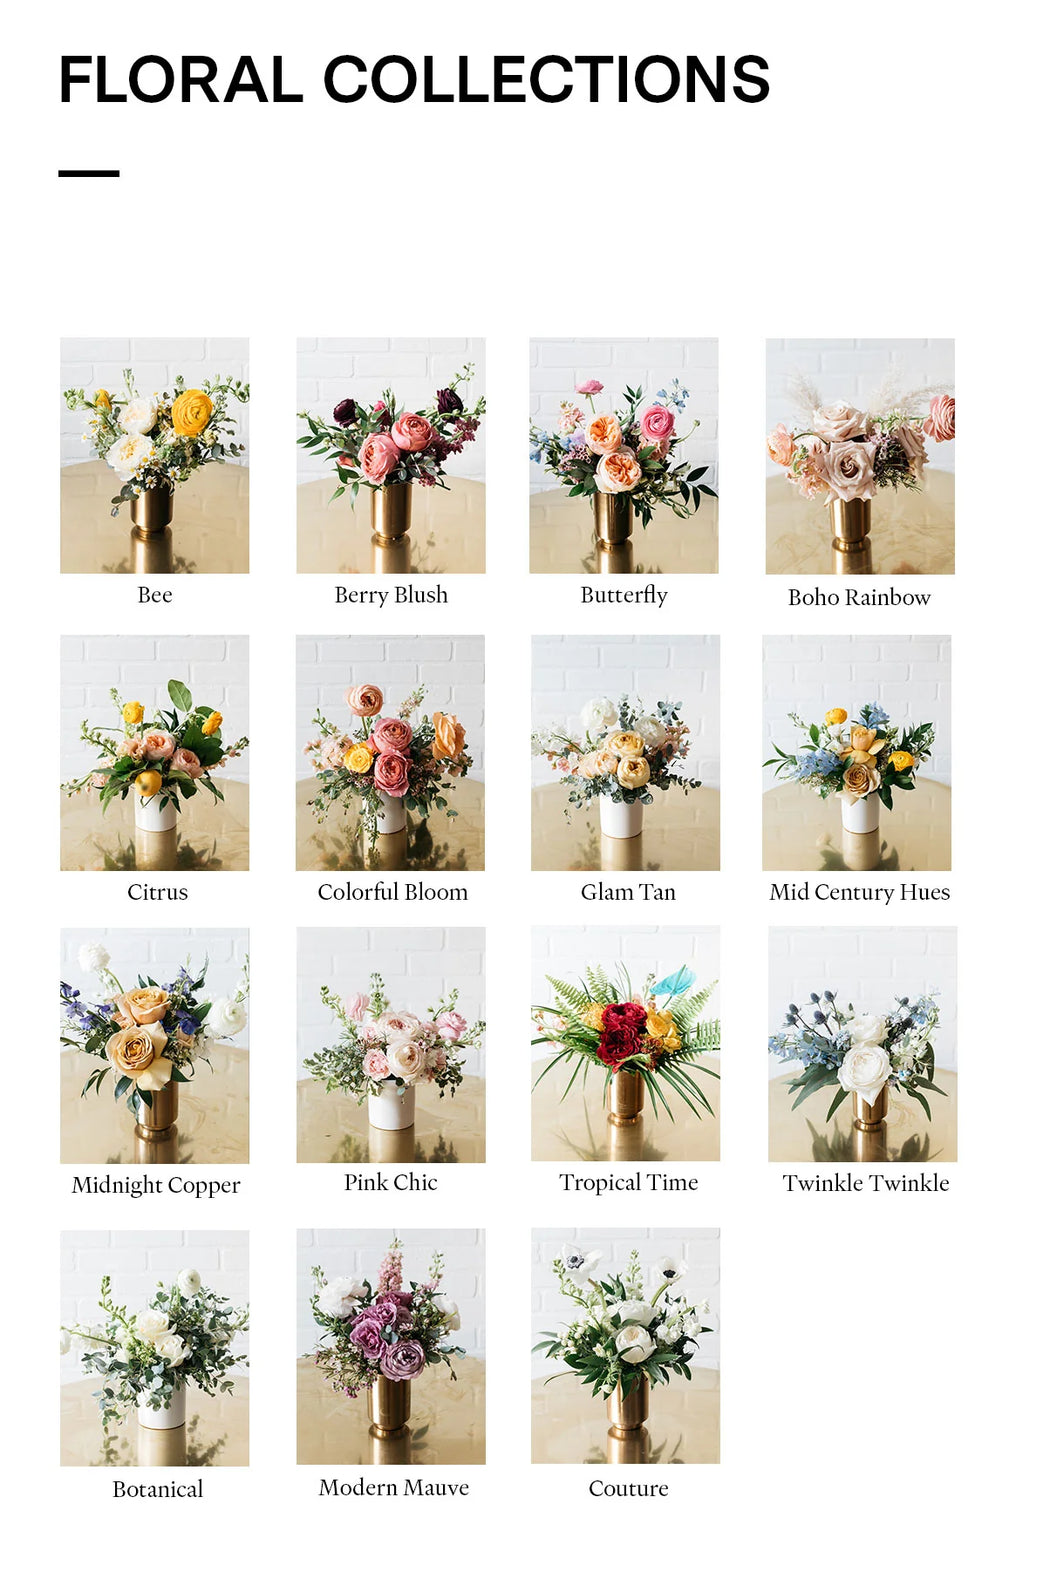 Boho Rainbow - Floral Mix - The centerpiece Set — Paris312